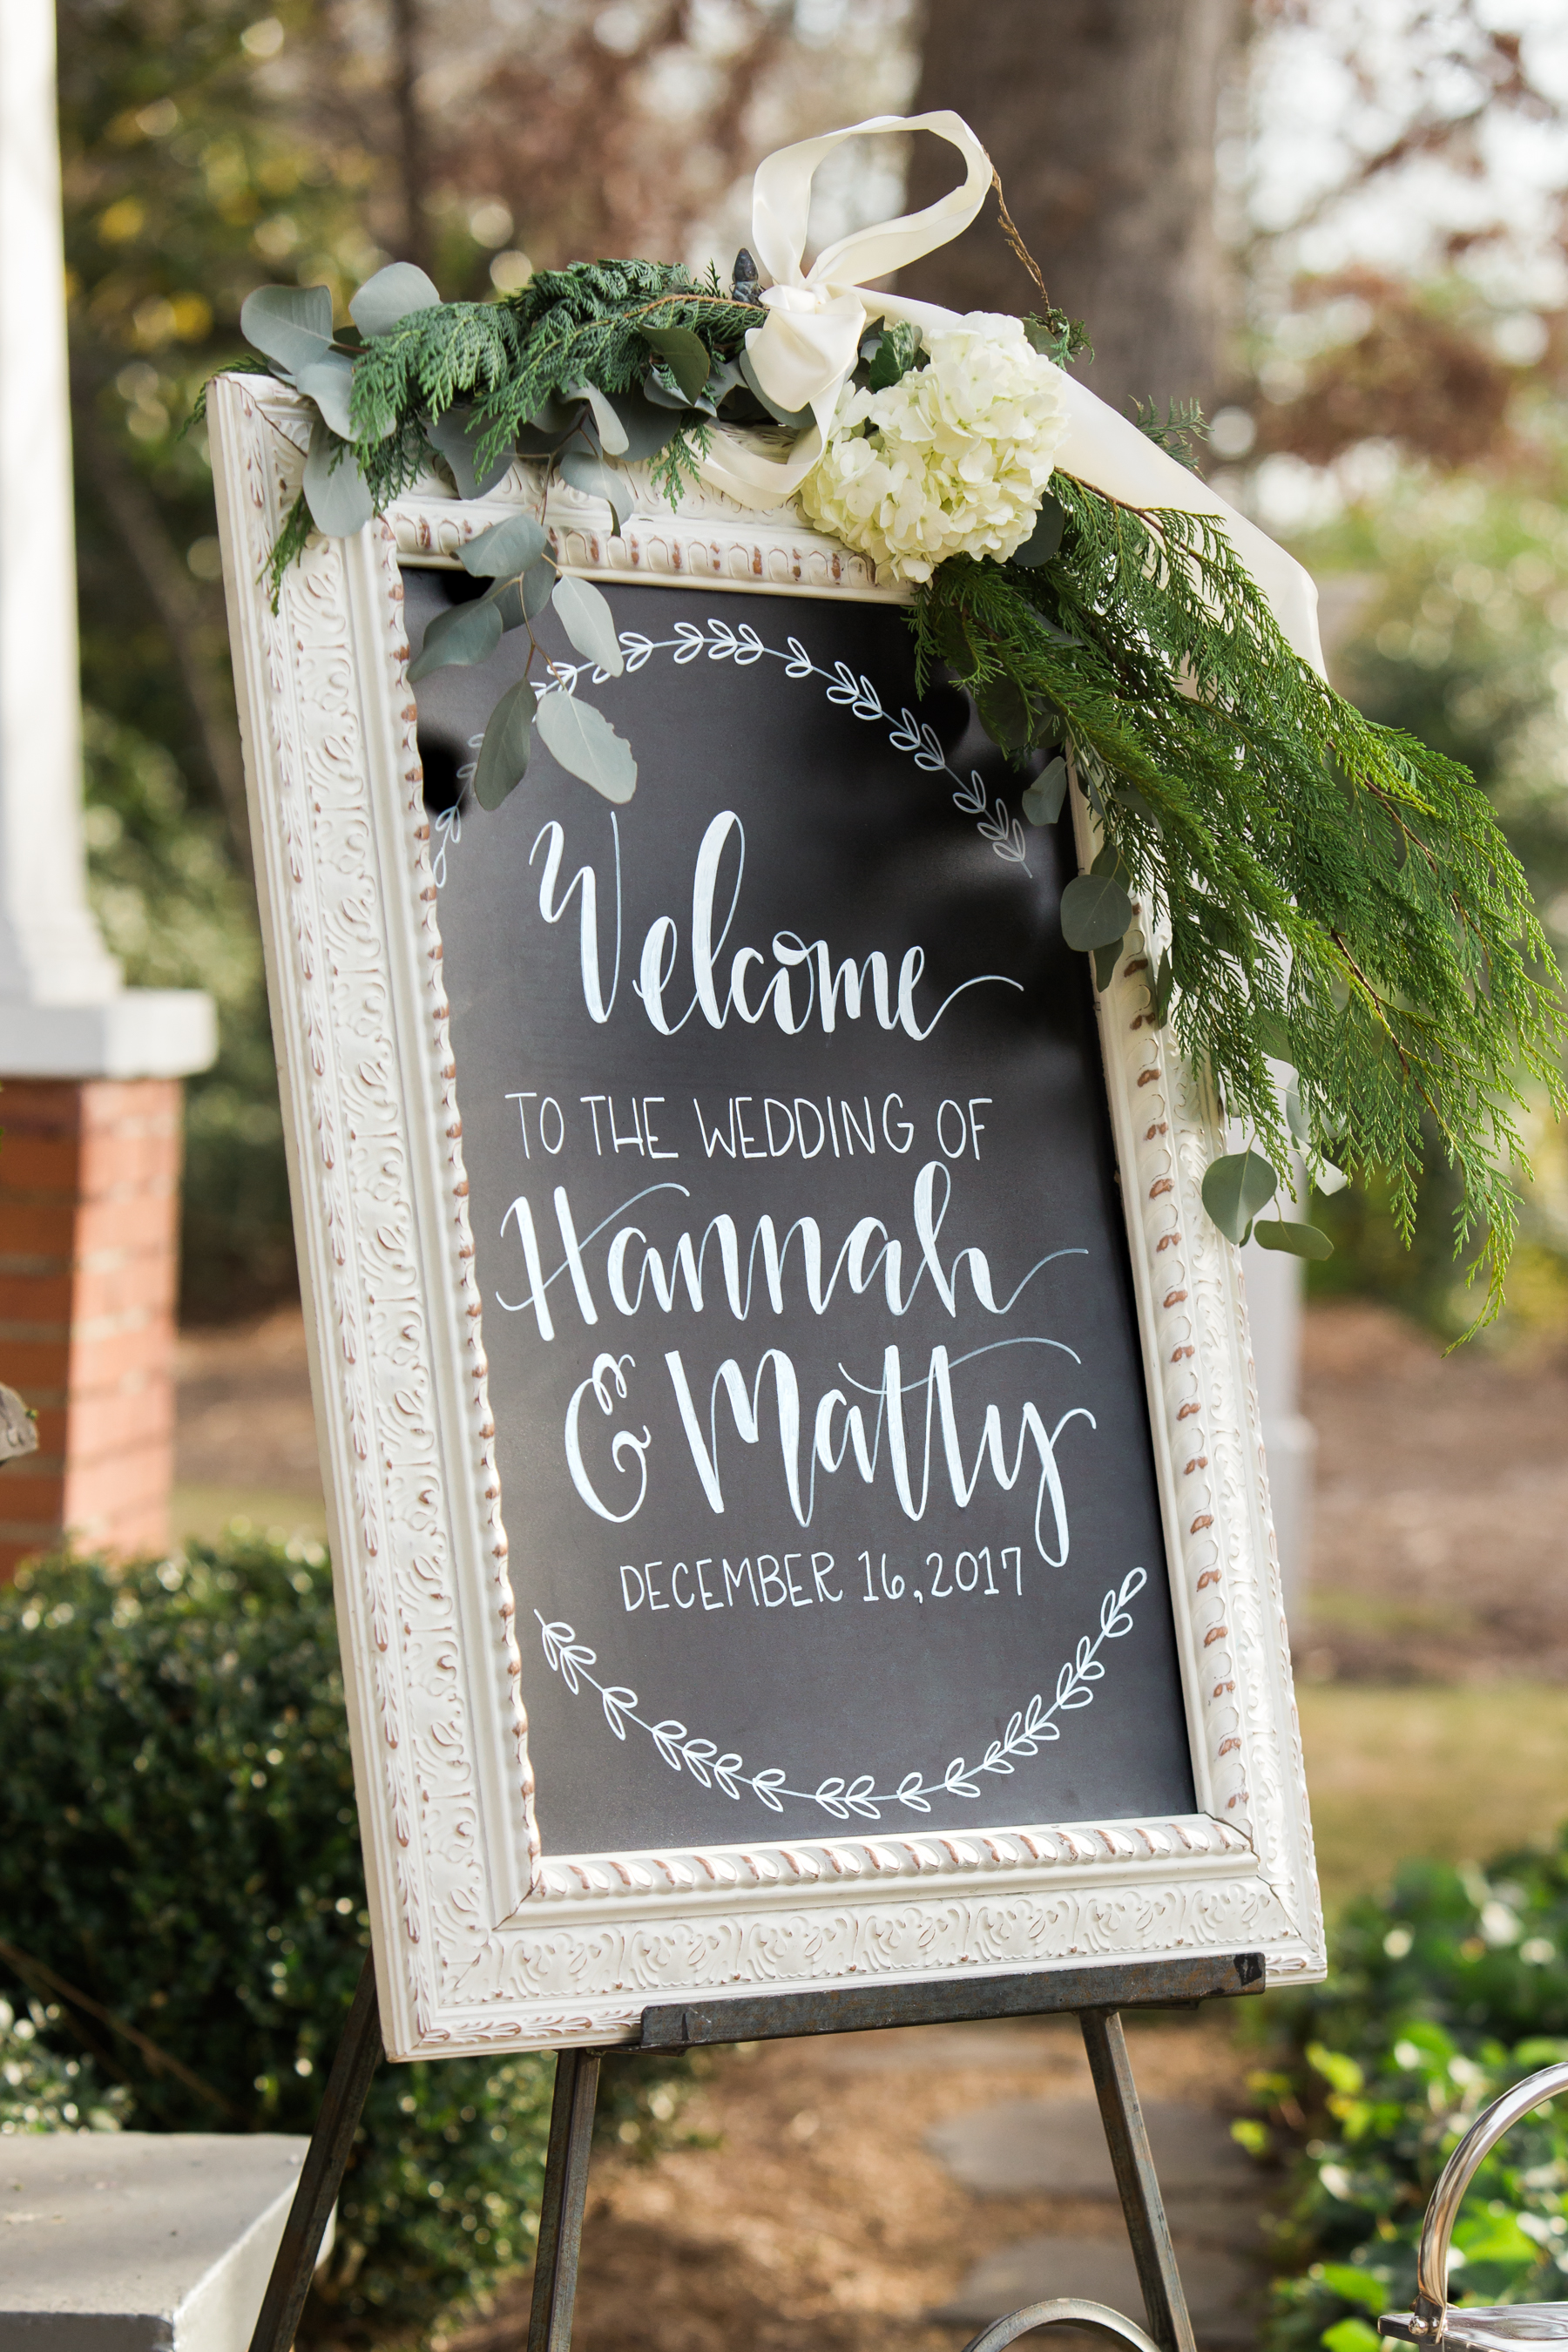 Wedding day chalkboard signage ideas.